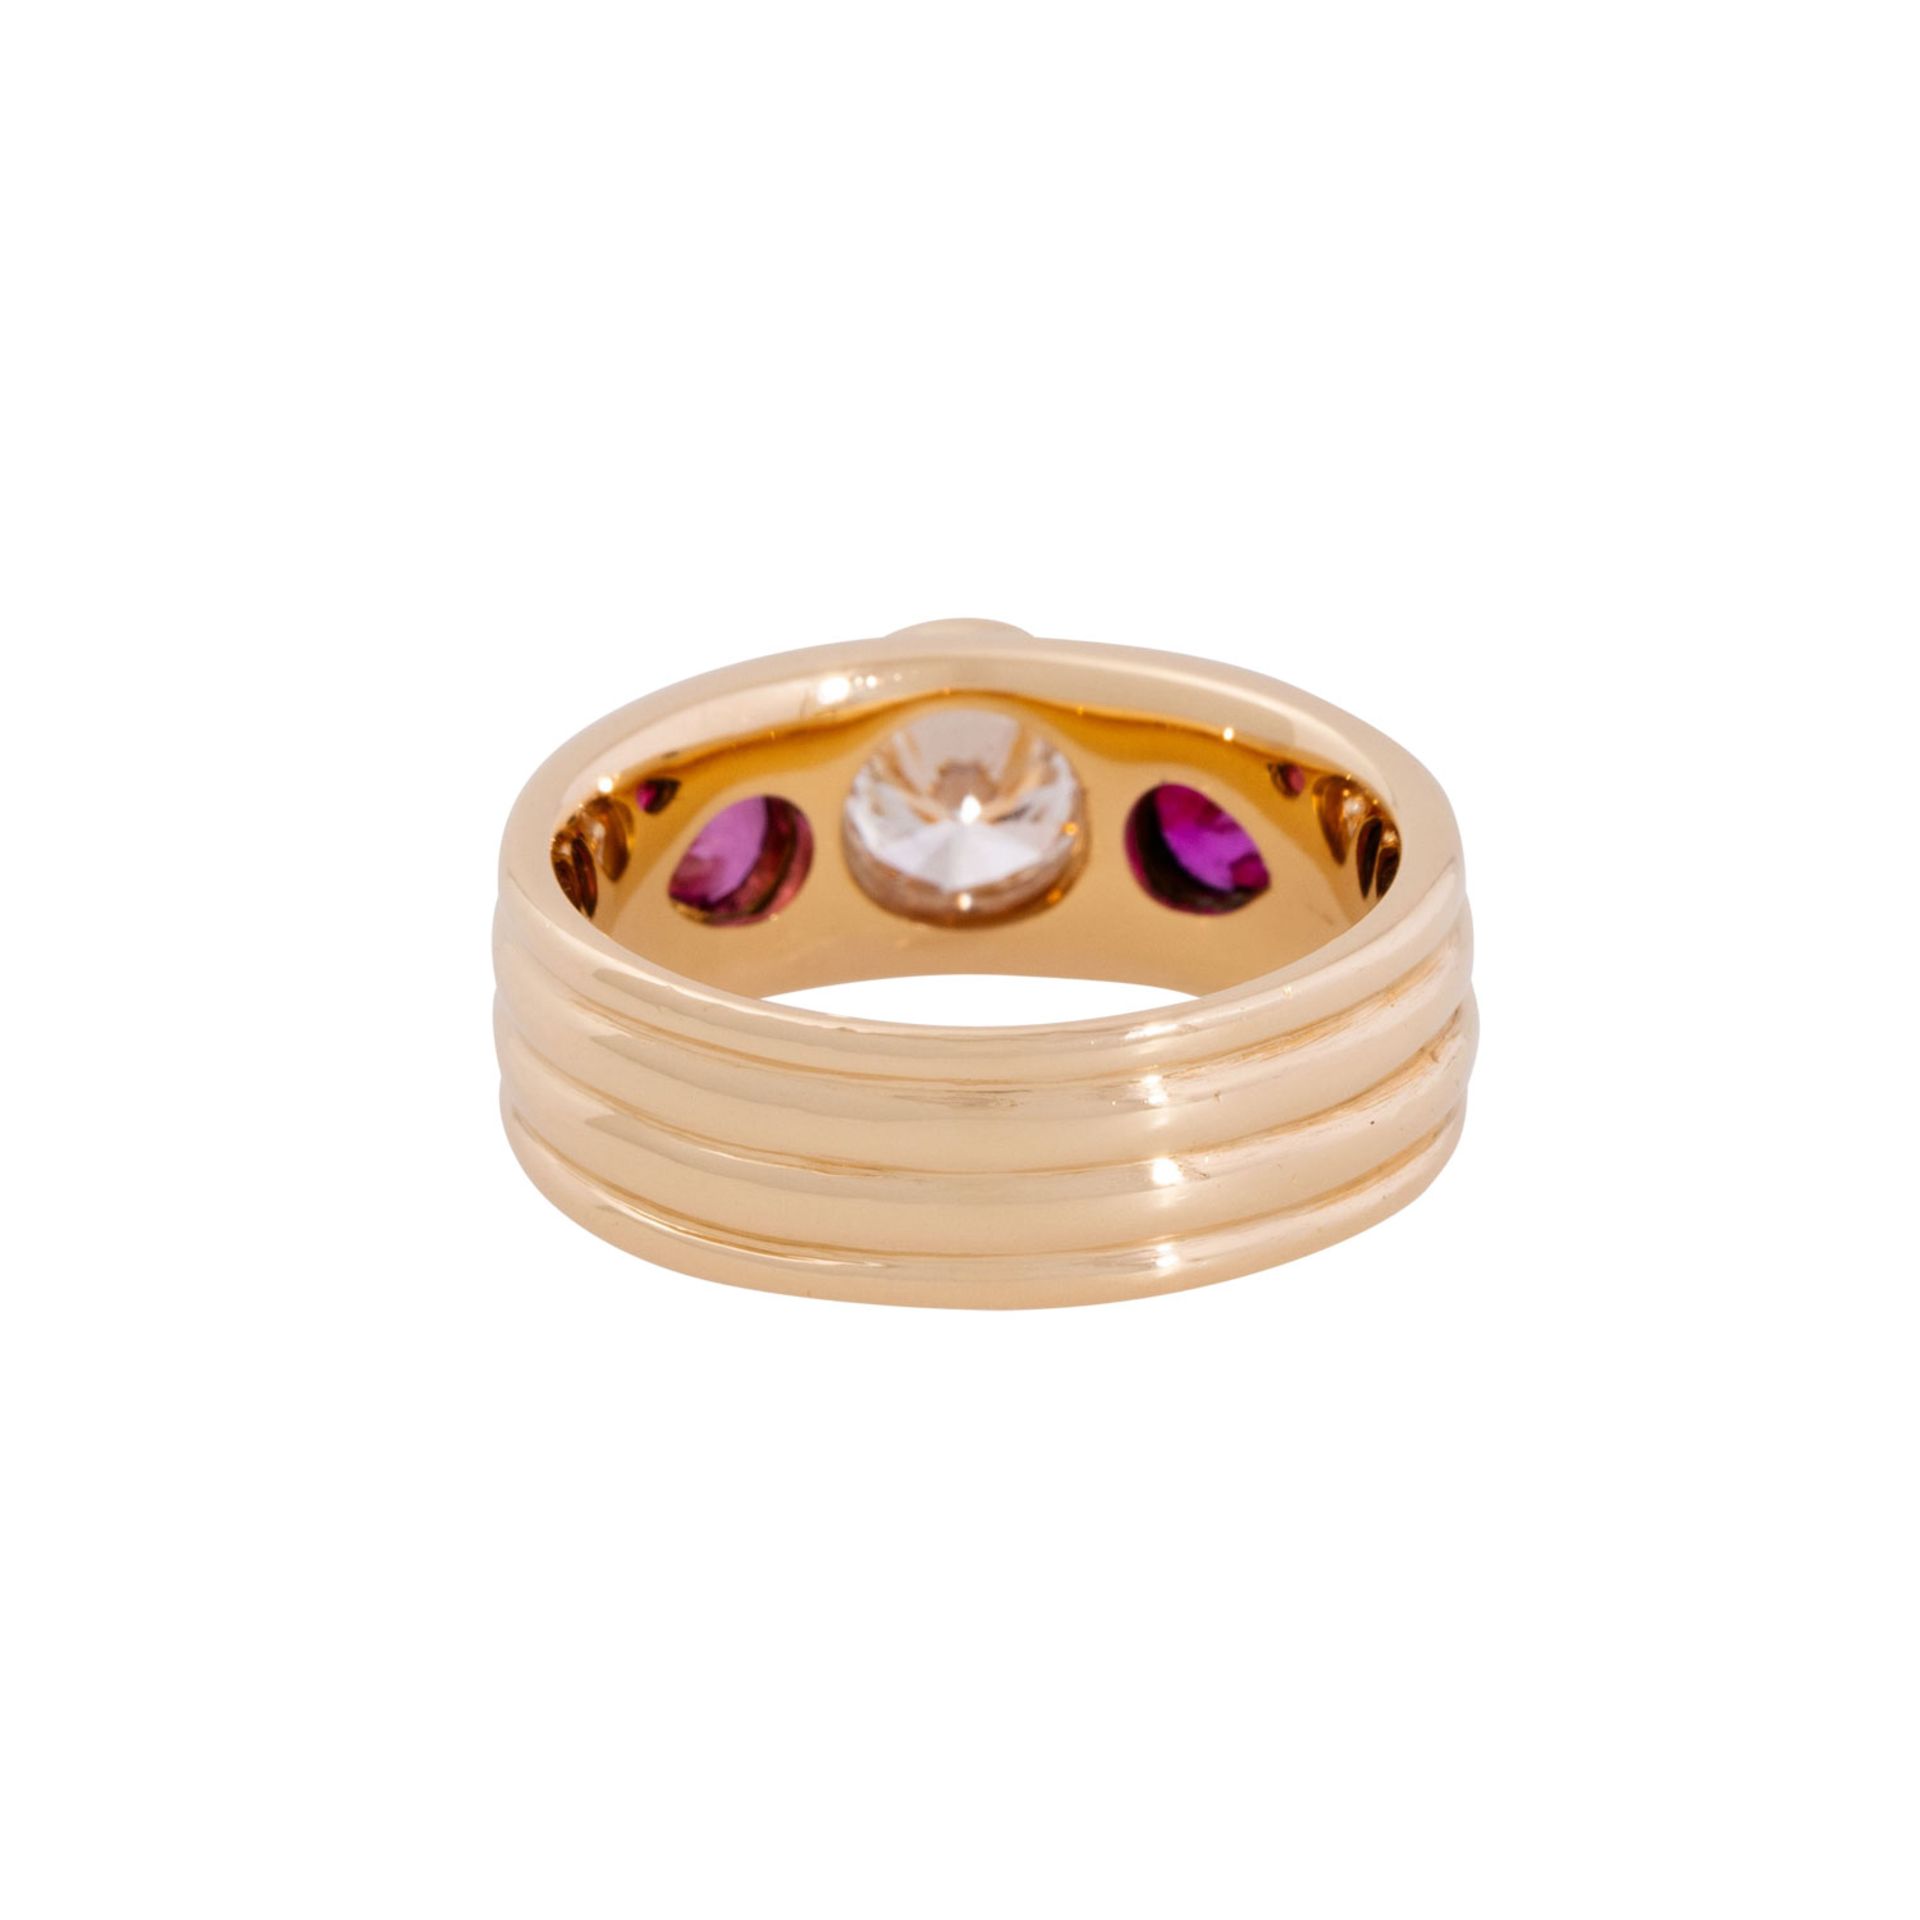 Ring mit 2 Rubintropfen und 1 Brillant von ca. 1 ct, - Image 3 of 5